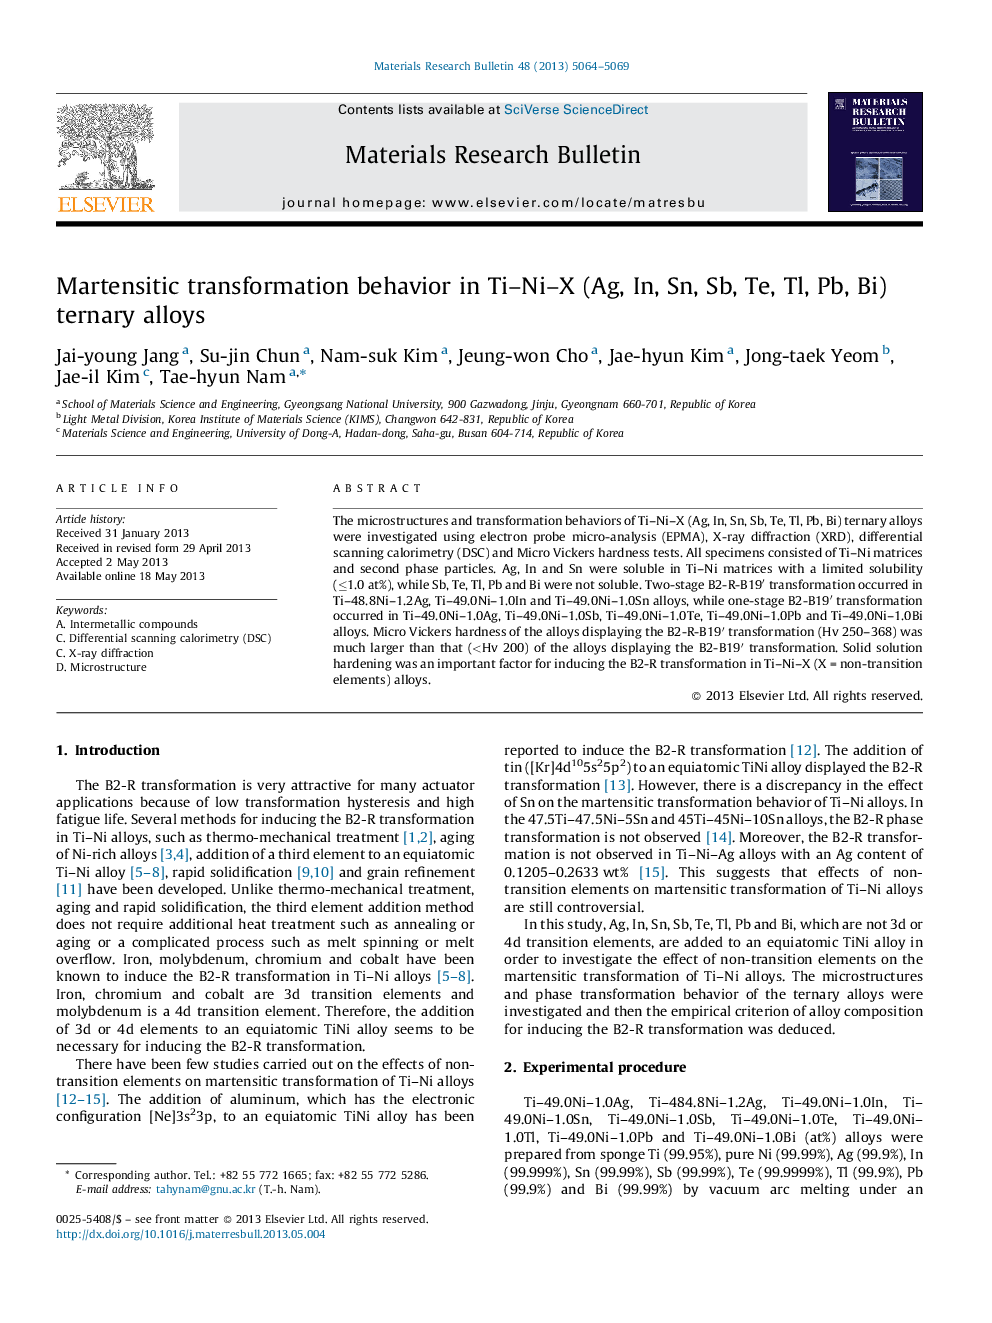 Martensitic transformation behavior in Ti–Ni–X (Ag, In, Sn, Sb, Te, Tl, Pb, Bi) ternary alloys